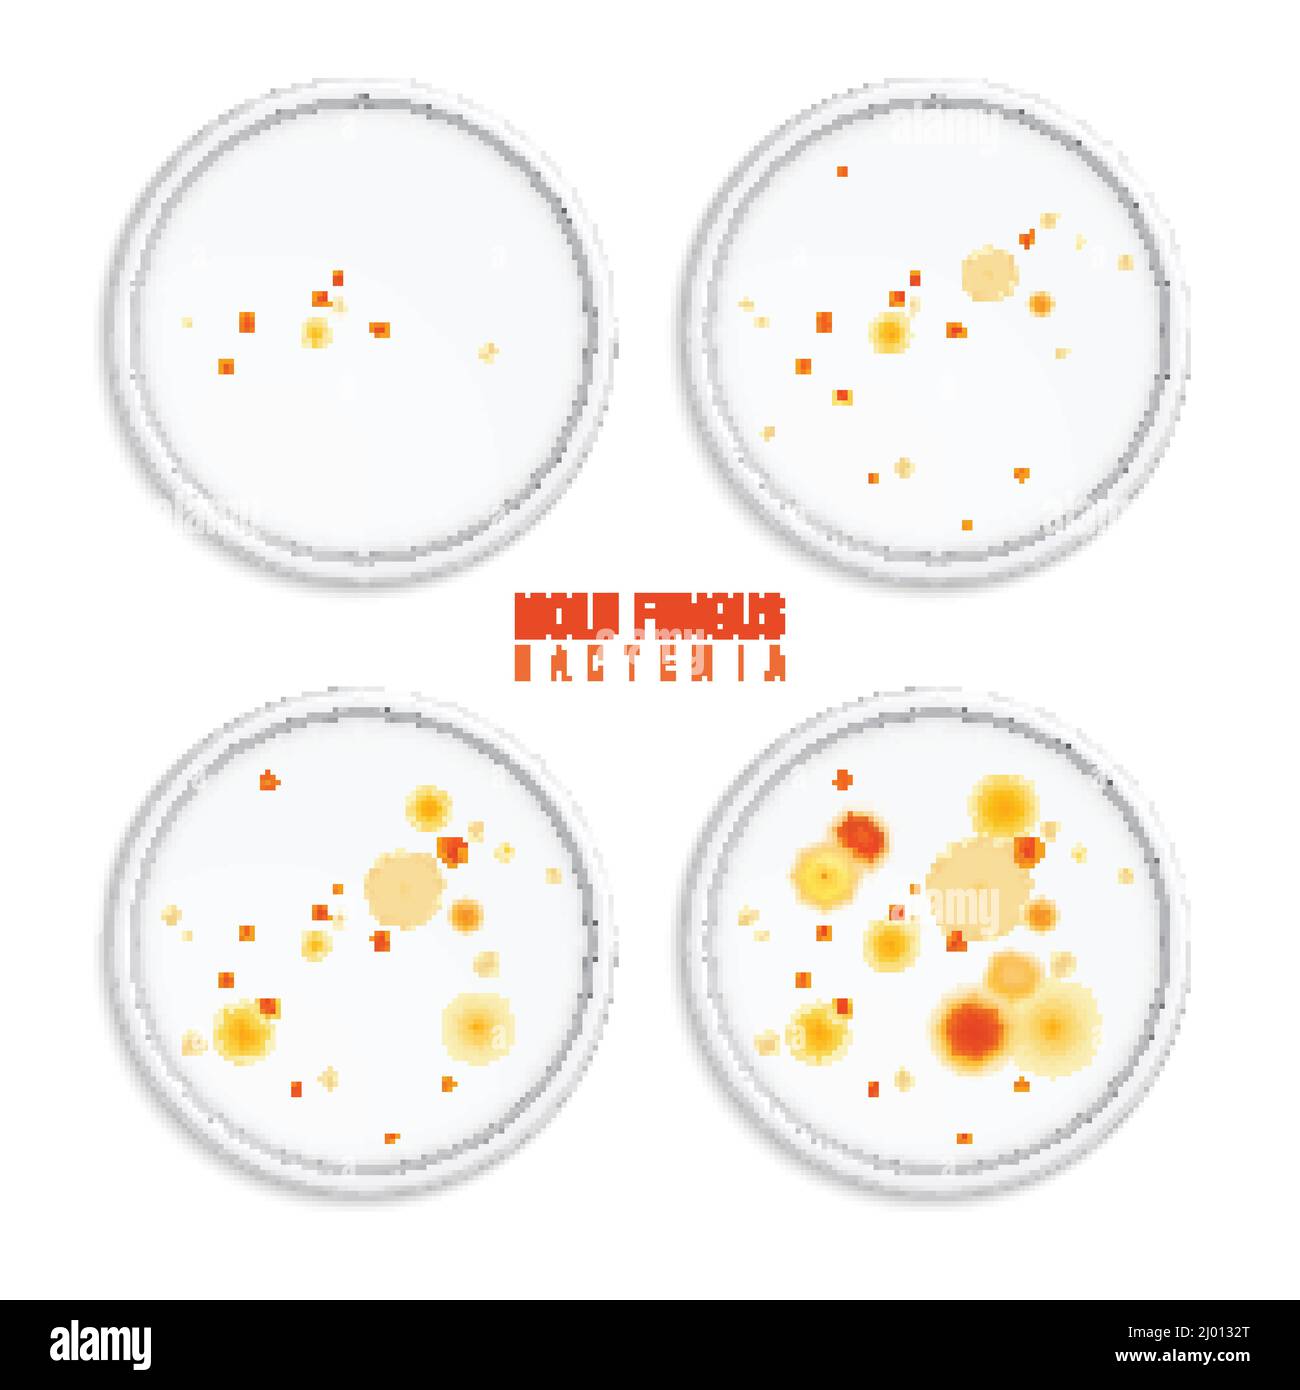 Mold Fungus bacteria coloni insieme di quattro immagini realistiche con cornici rotonde punti colorati e testo vettoriale illustrazione Illustrazione Vettoriale